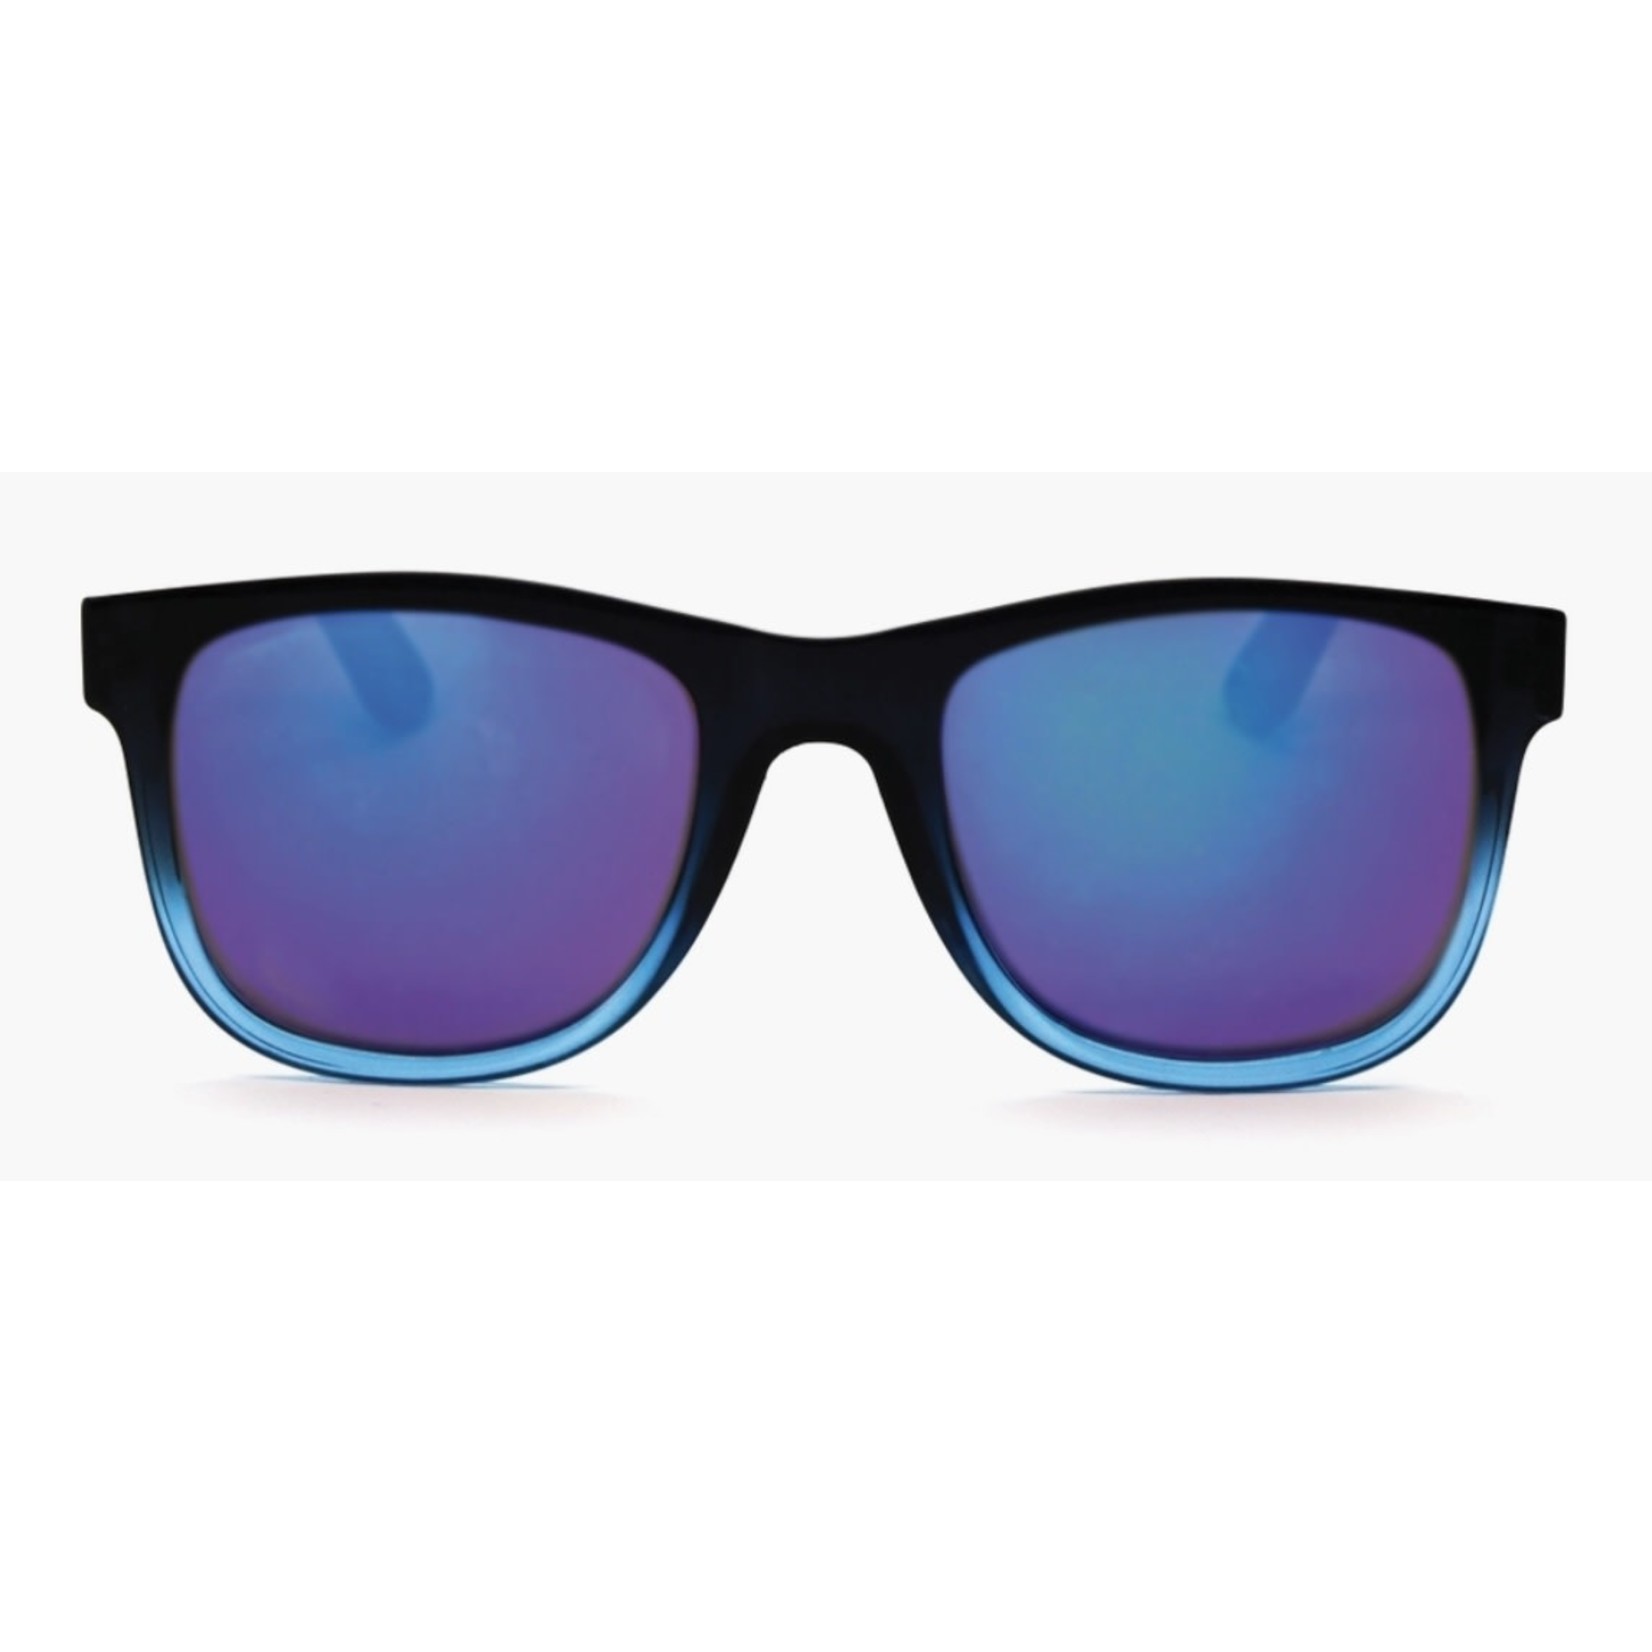 Optimum Optical Accessories: Assorted Sunglasses